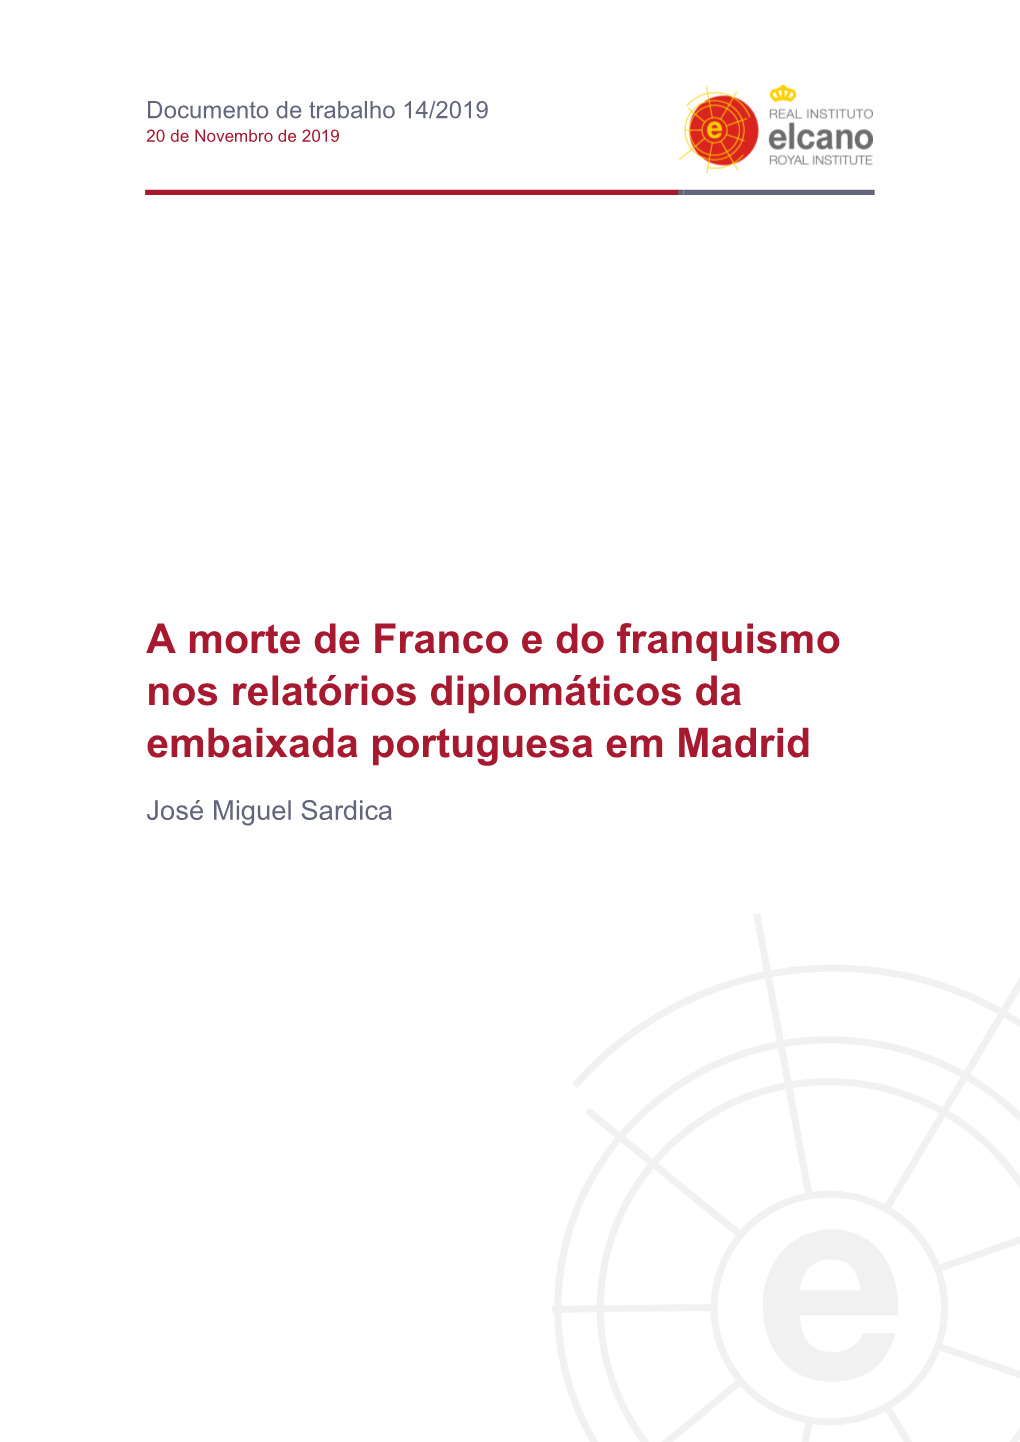 A Morte De Franco E Do Franquismo Nos Relatórios Diplomáticos Da Embaixada Portuguesa Em Madrid